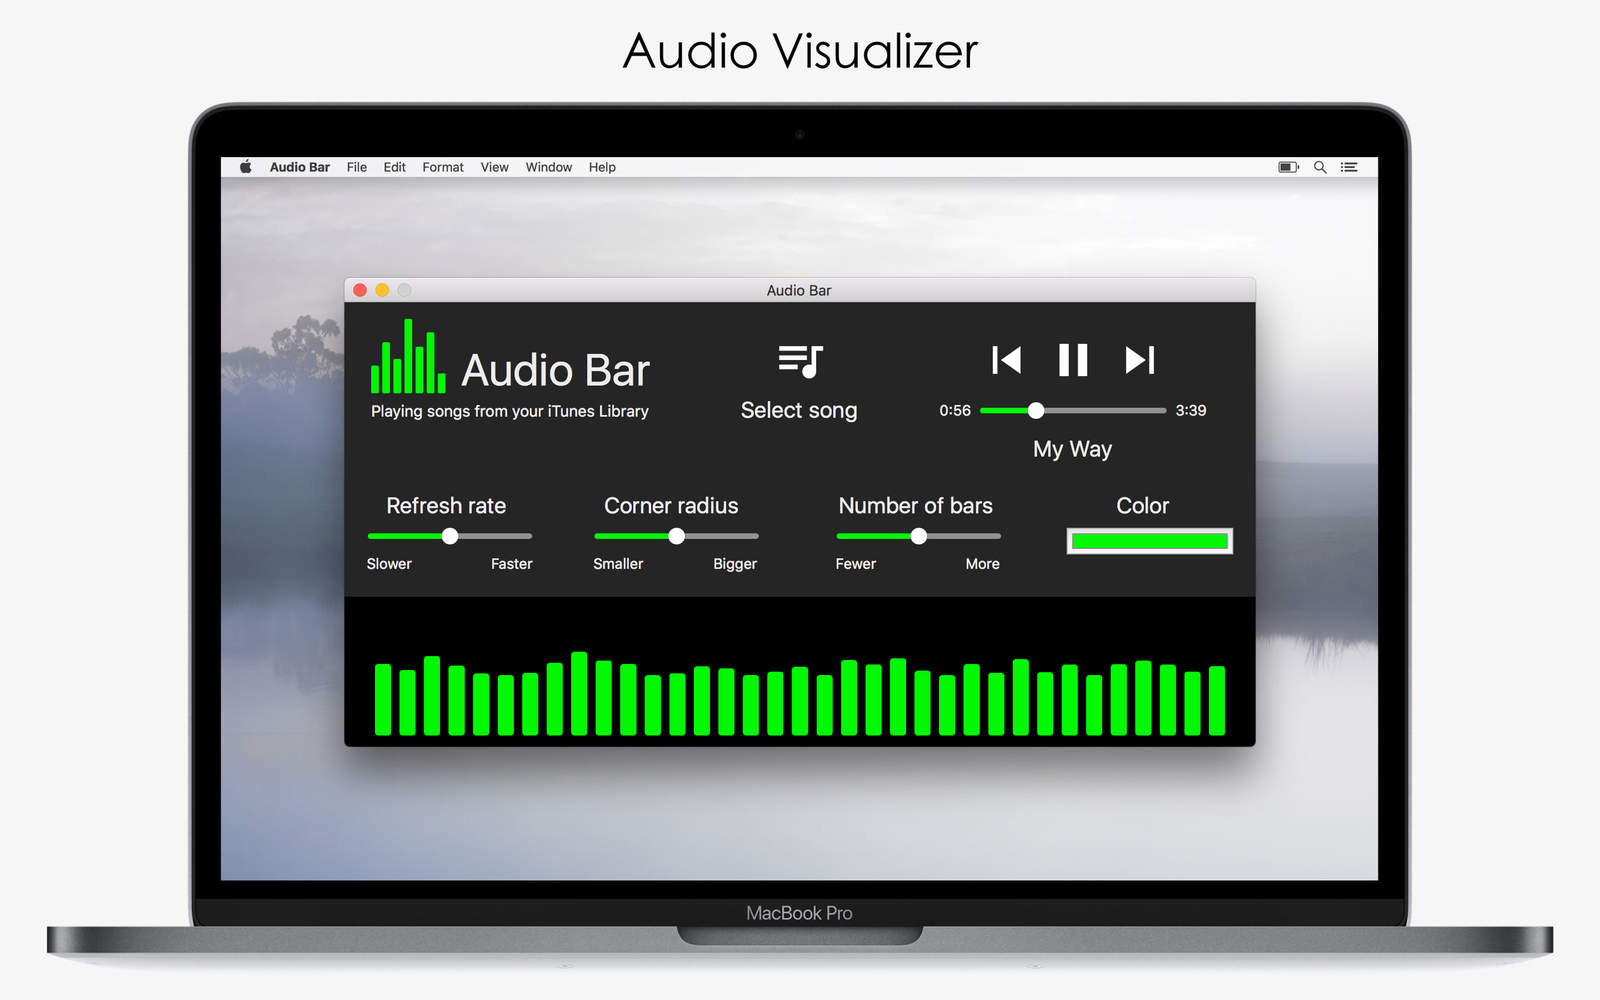 Audio Bar 1.0 : Main Window